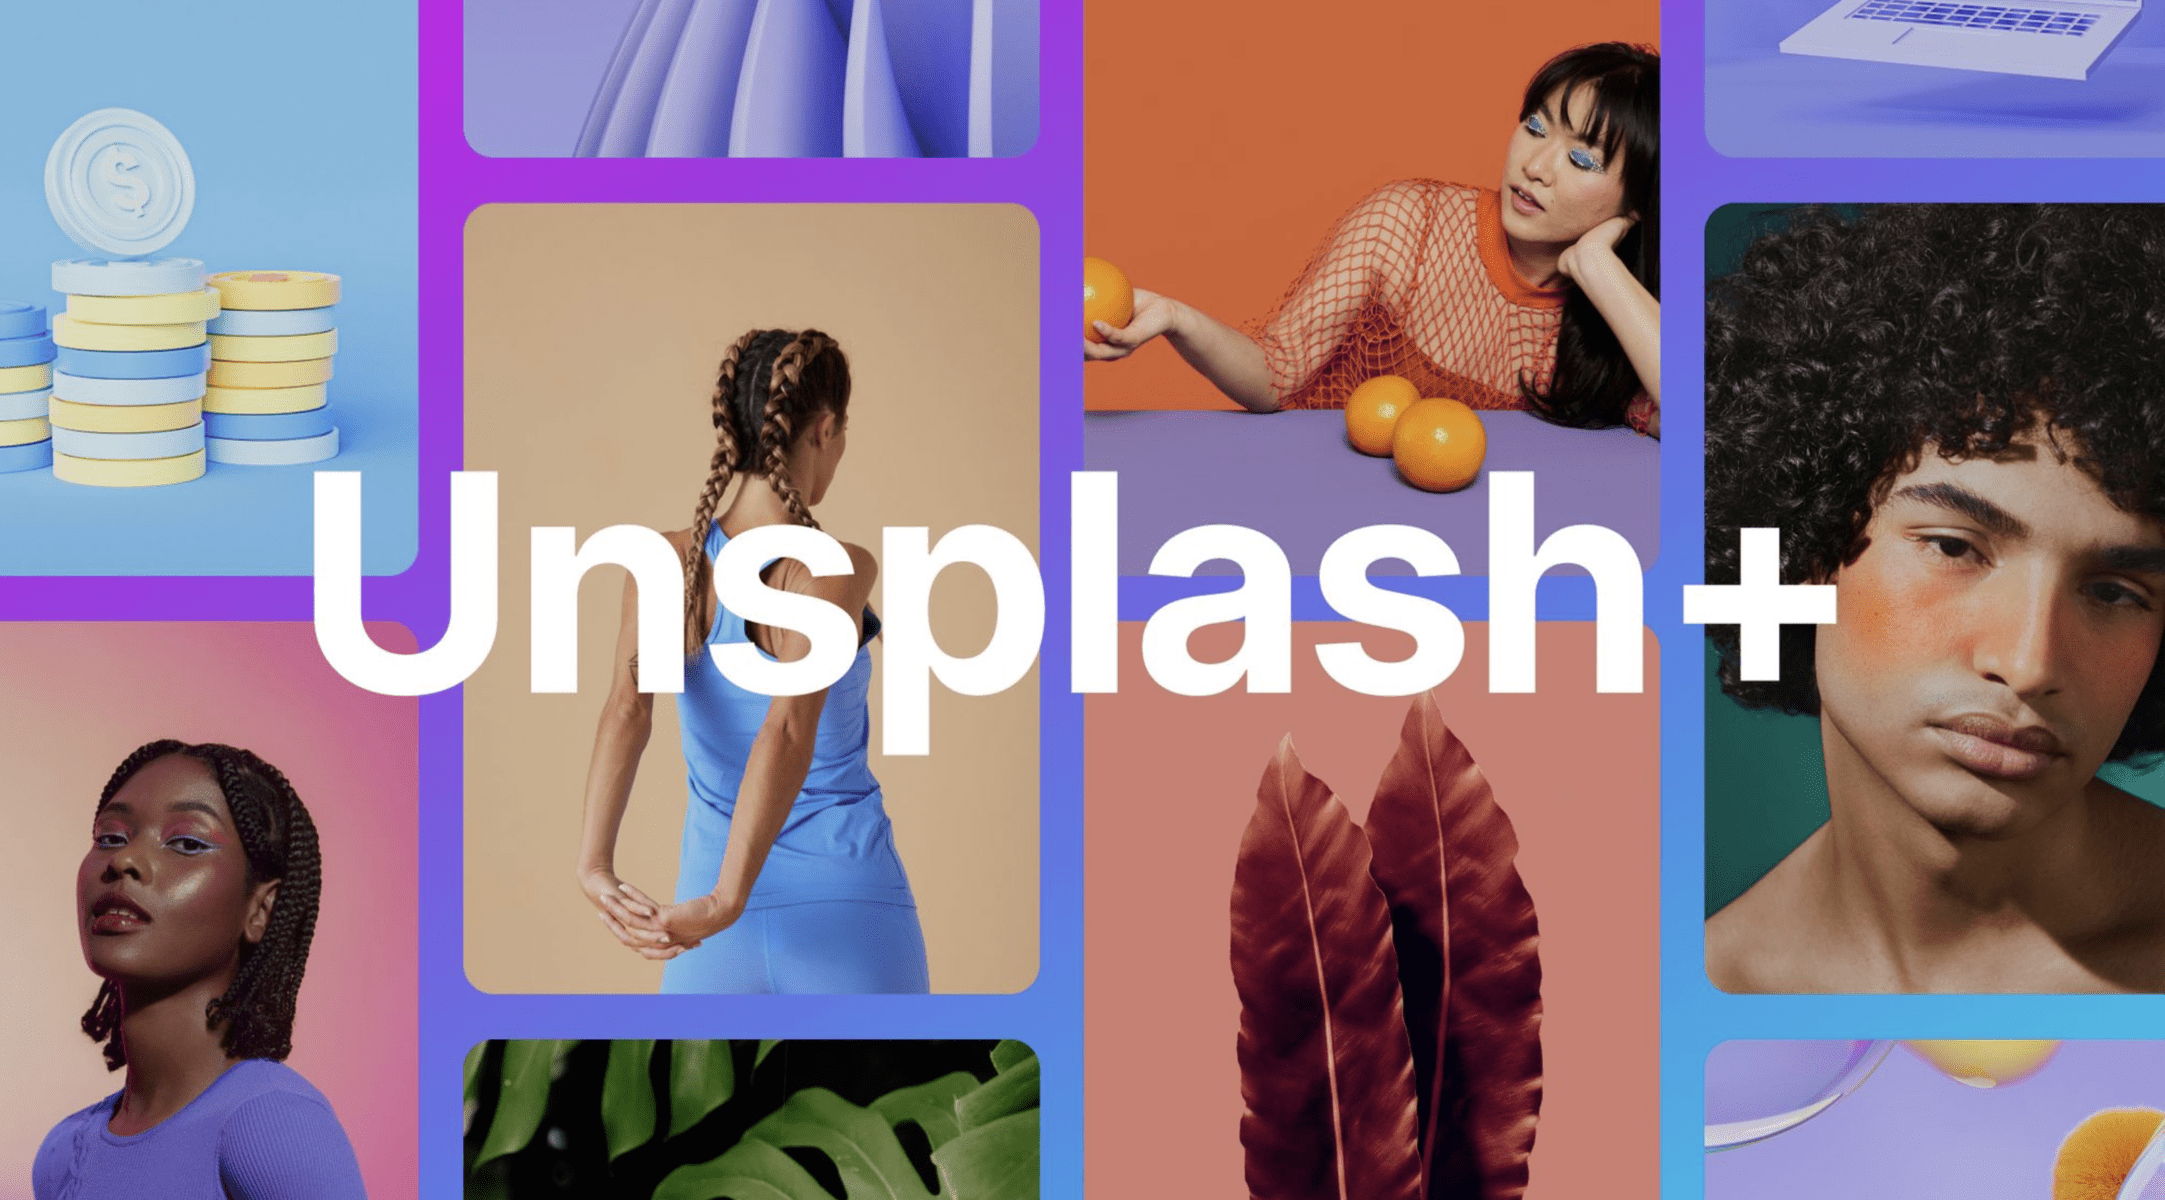  Společnost Unsplash vlastněná společností Getty spouští nové předplatné Unsplash+